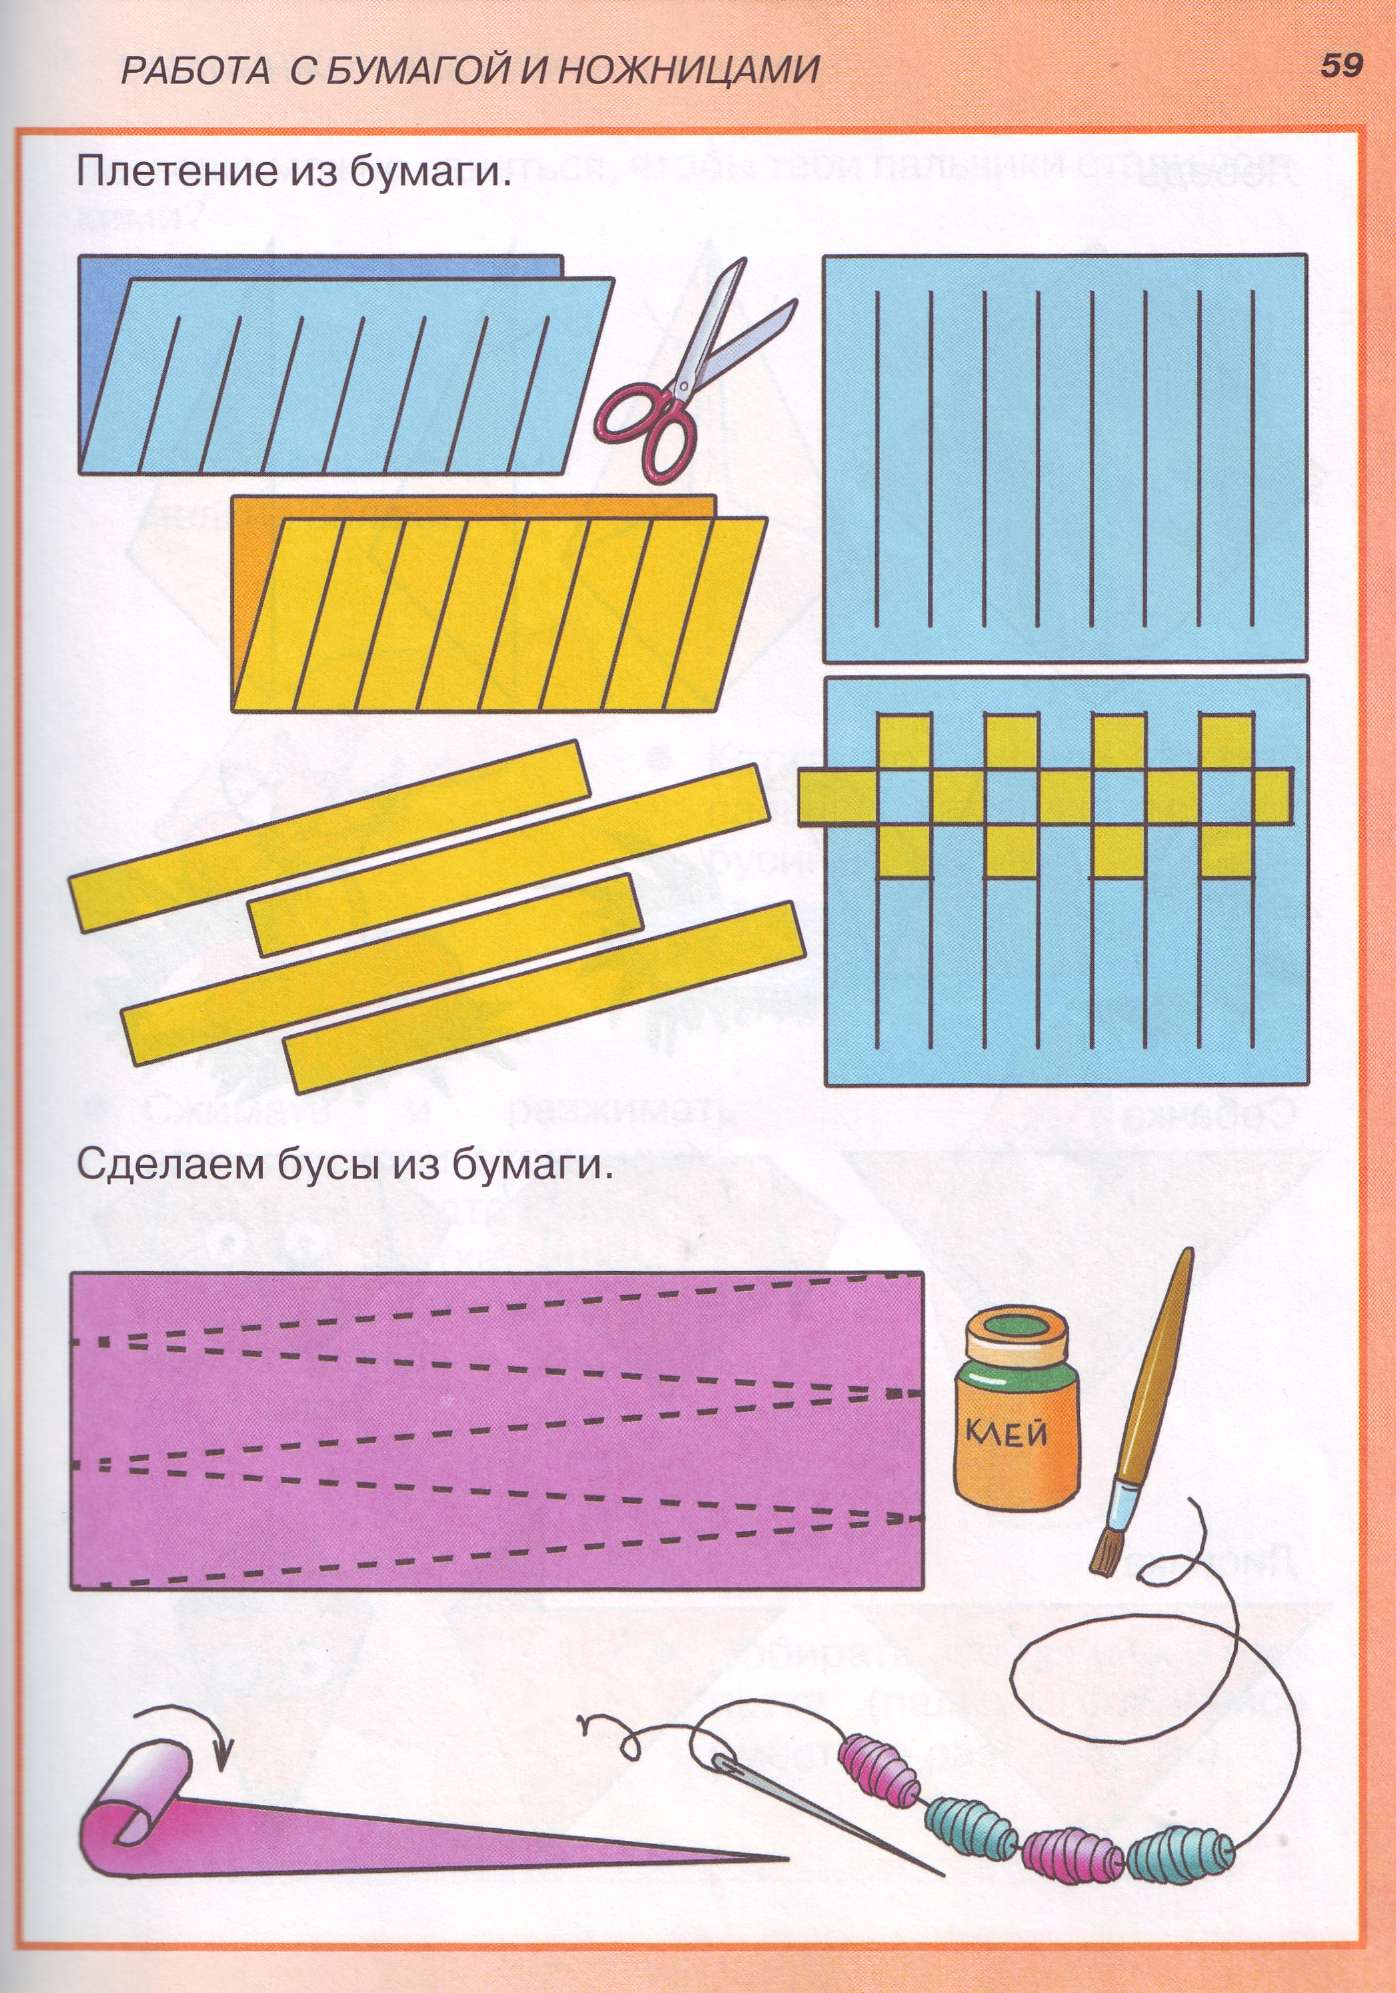 Плетение из бумаги для детей